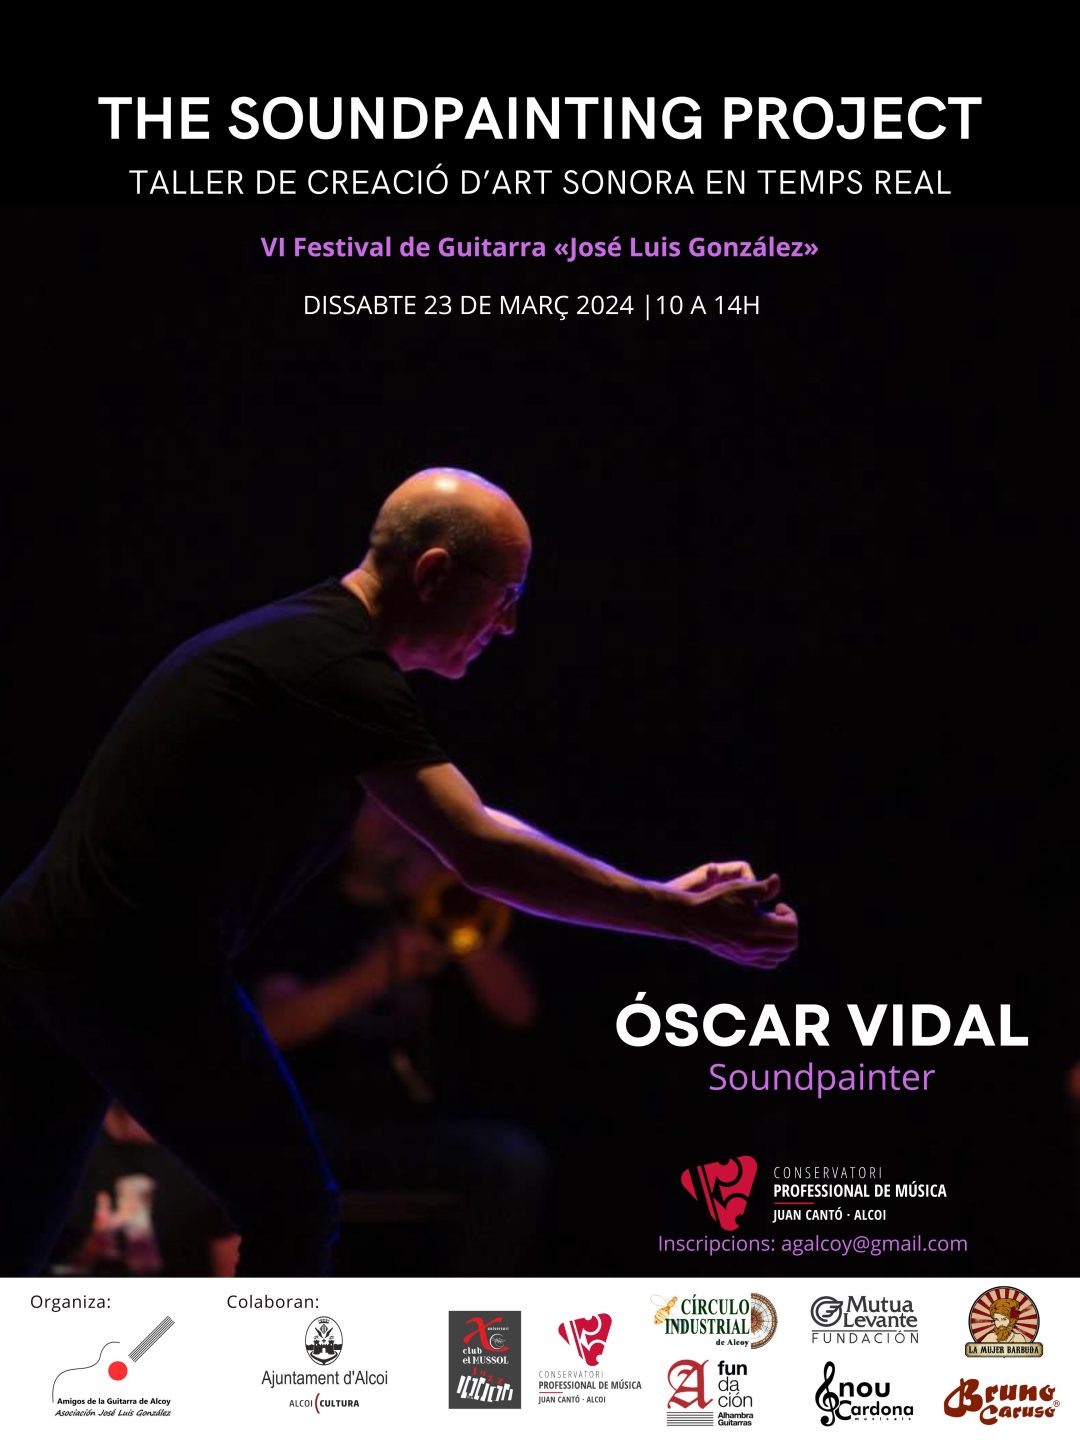 Taller de SOUNDPAINTING con Óscar Vidal. VI FESTIVAL DE GUITARRA